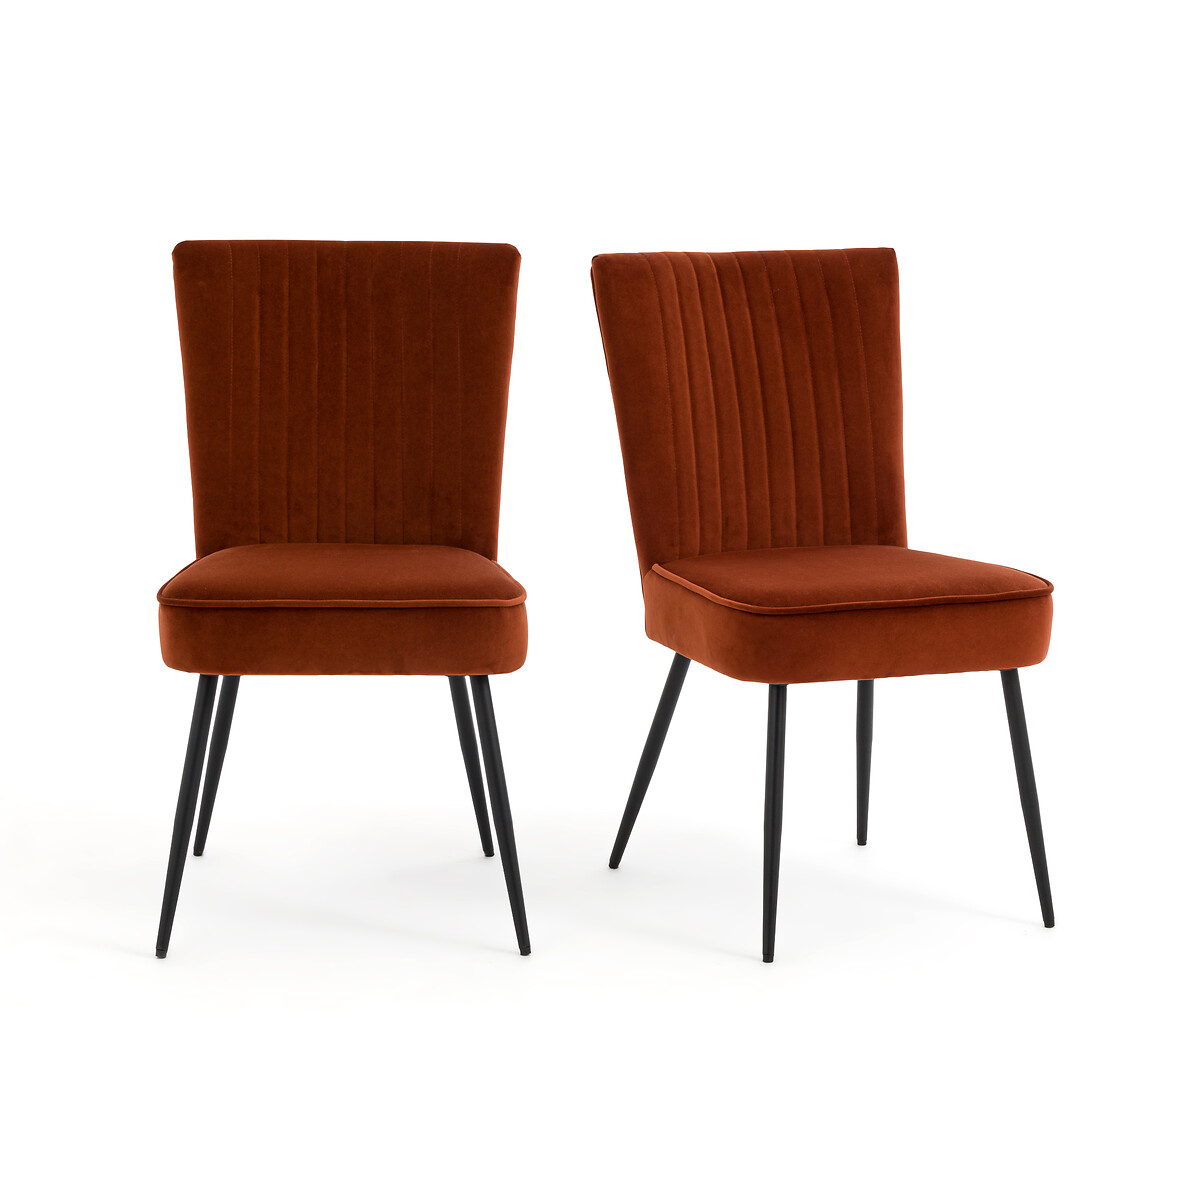 Комплект из 2-х винтажных стульев LaRedoute